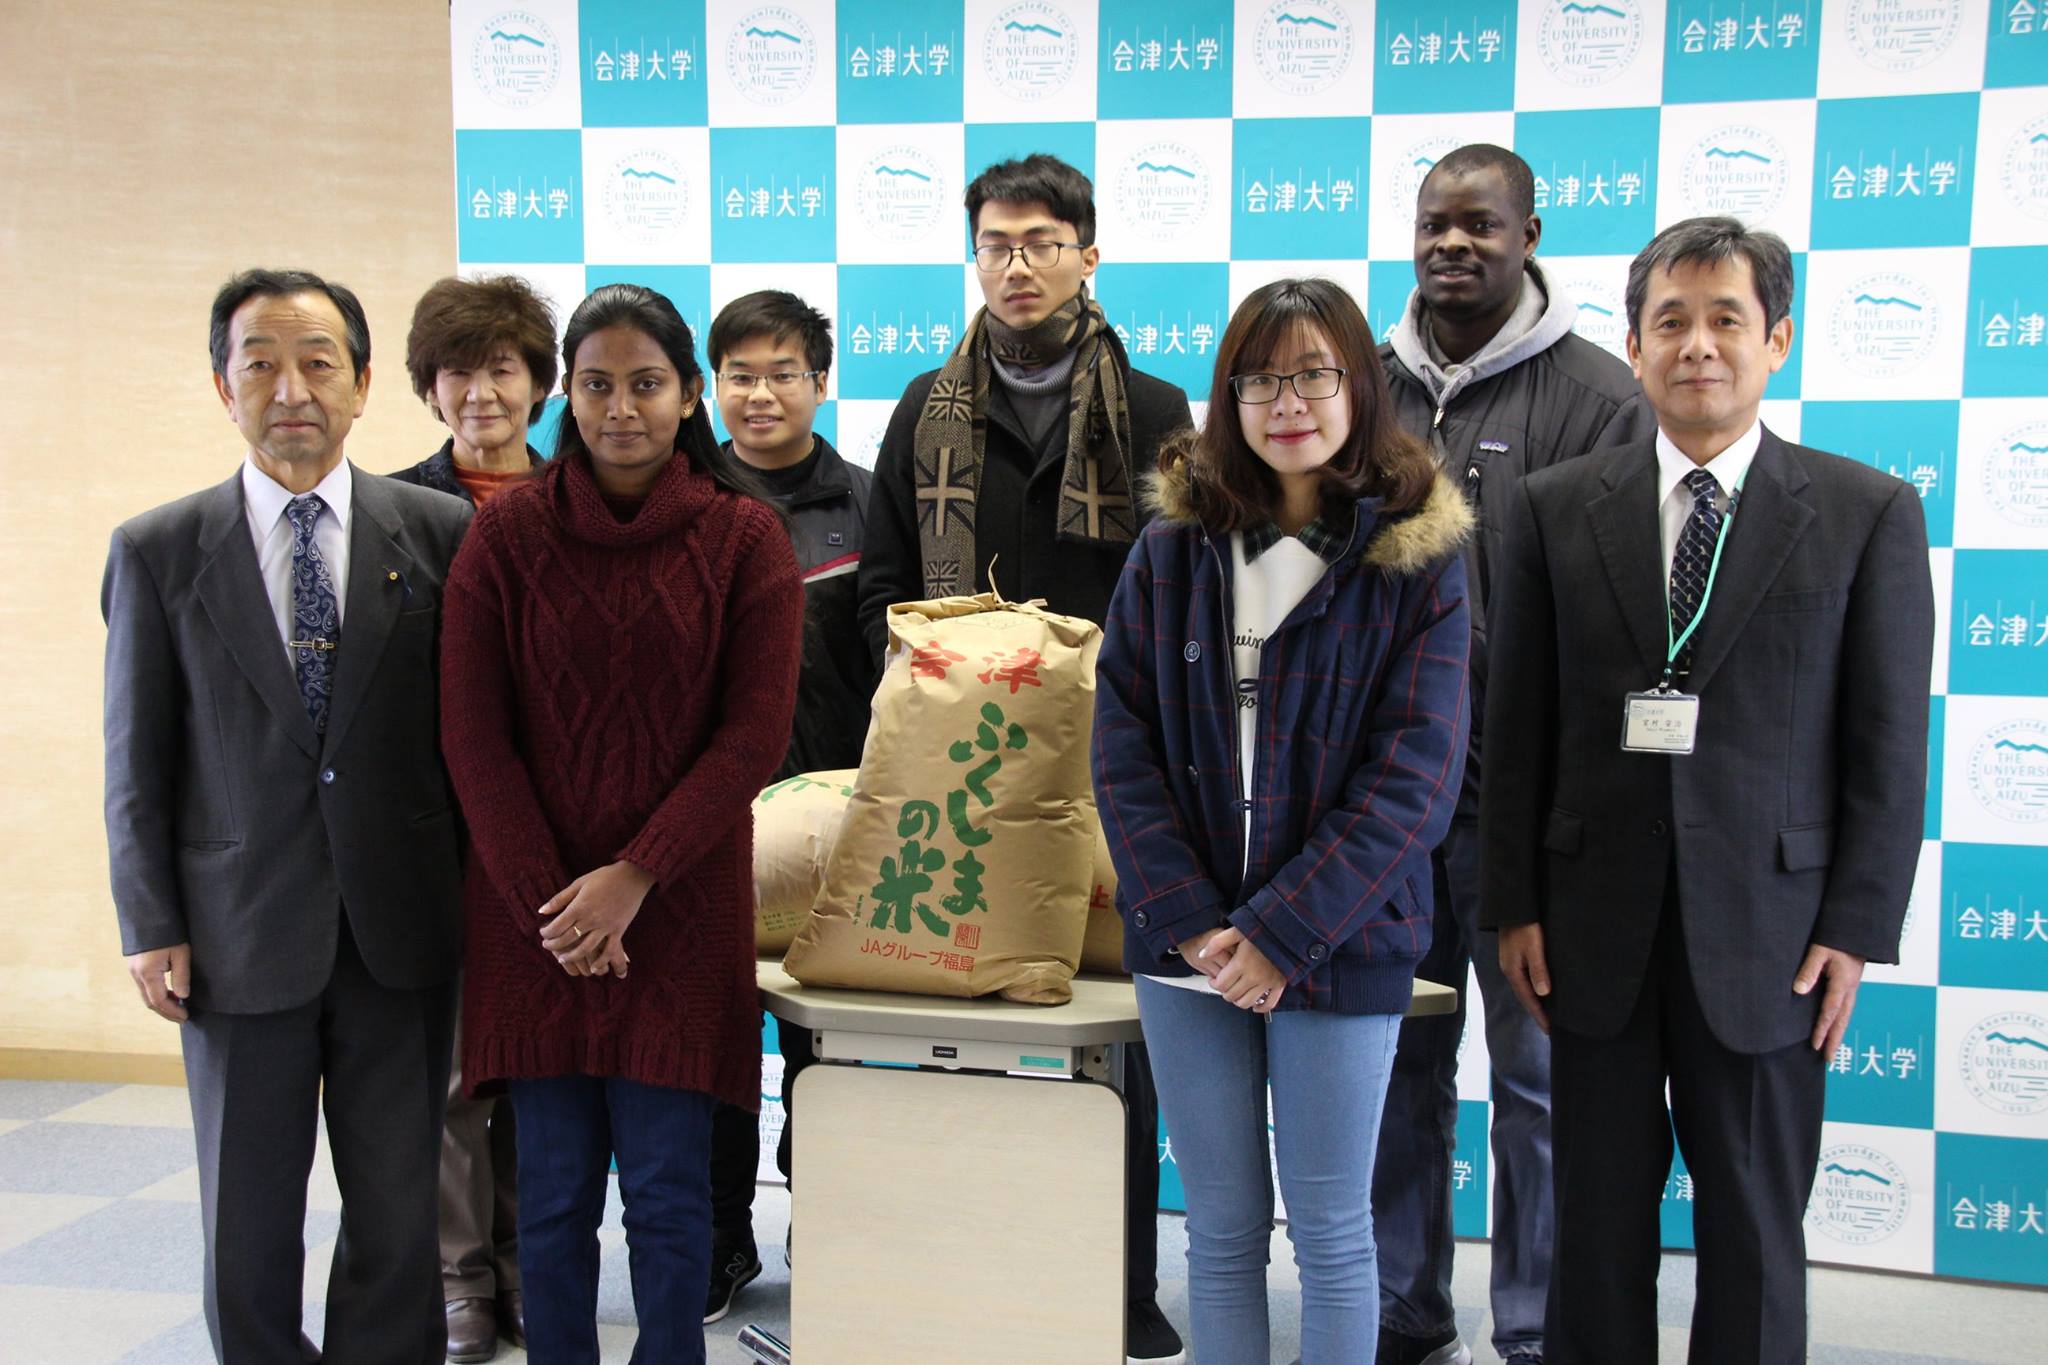 Rice was donated for UoA international students from Sakura Lanka Society